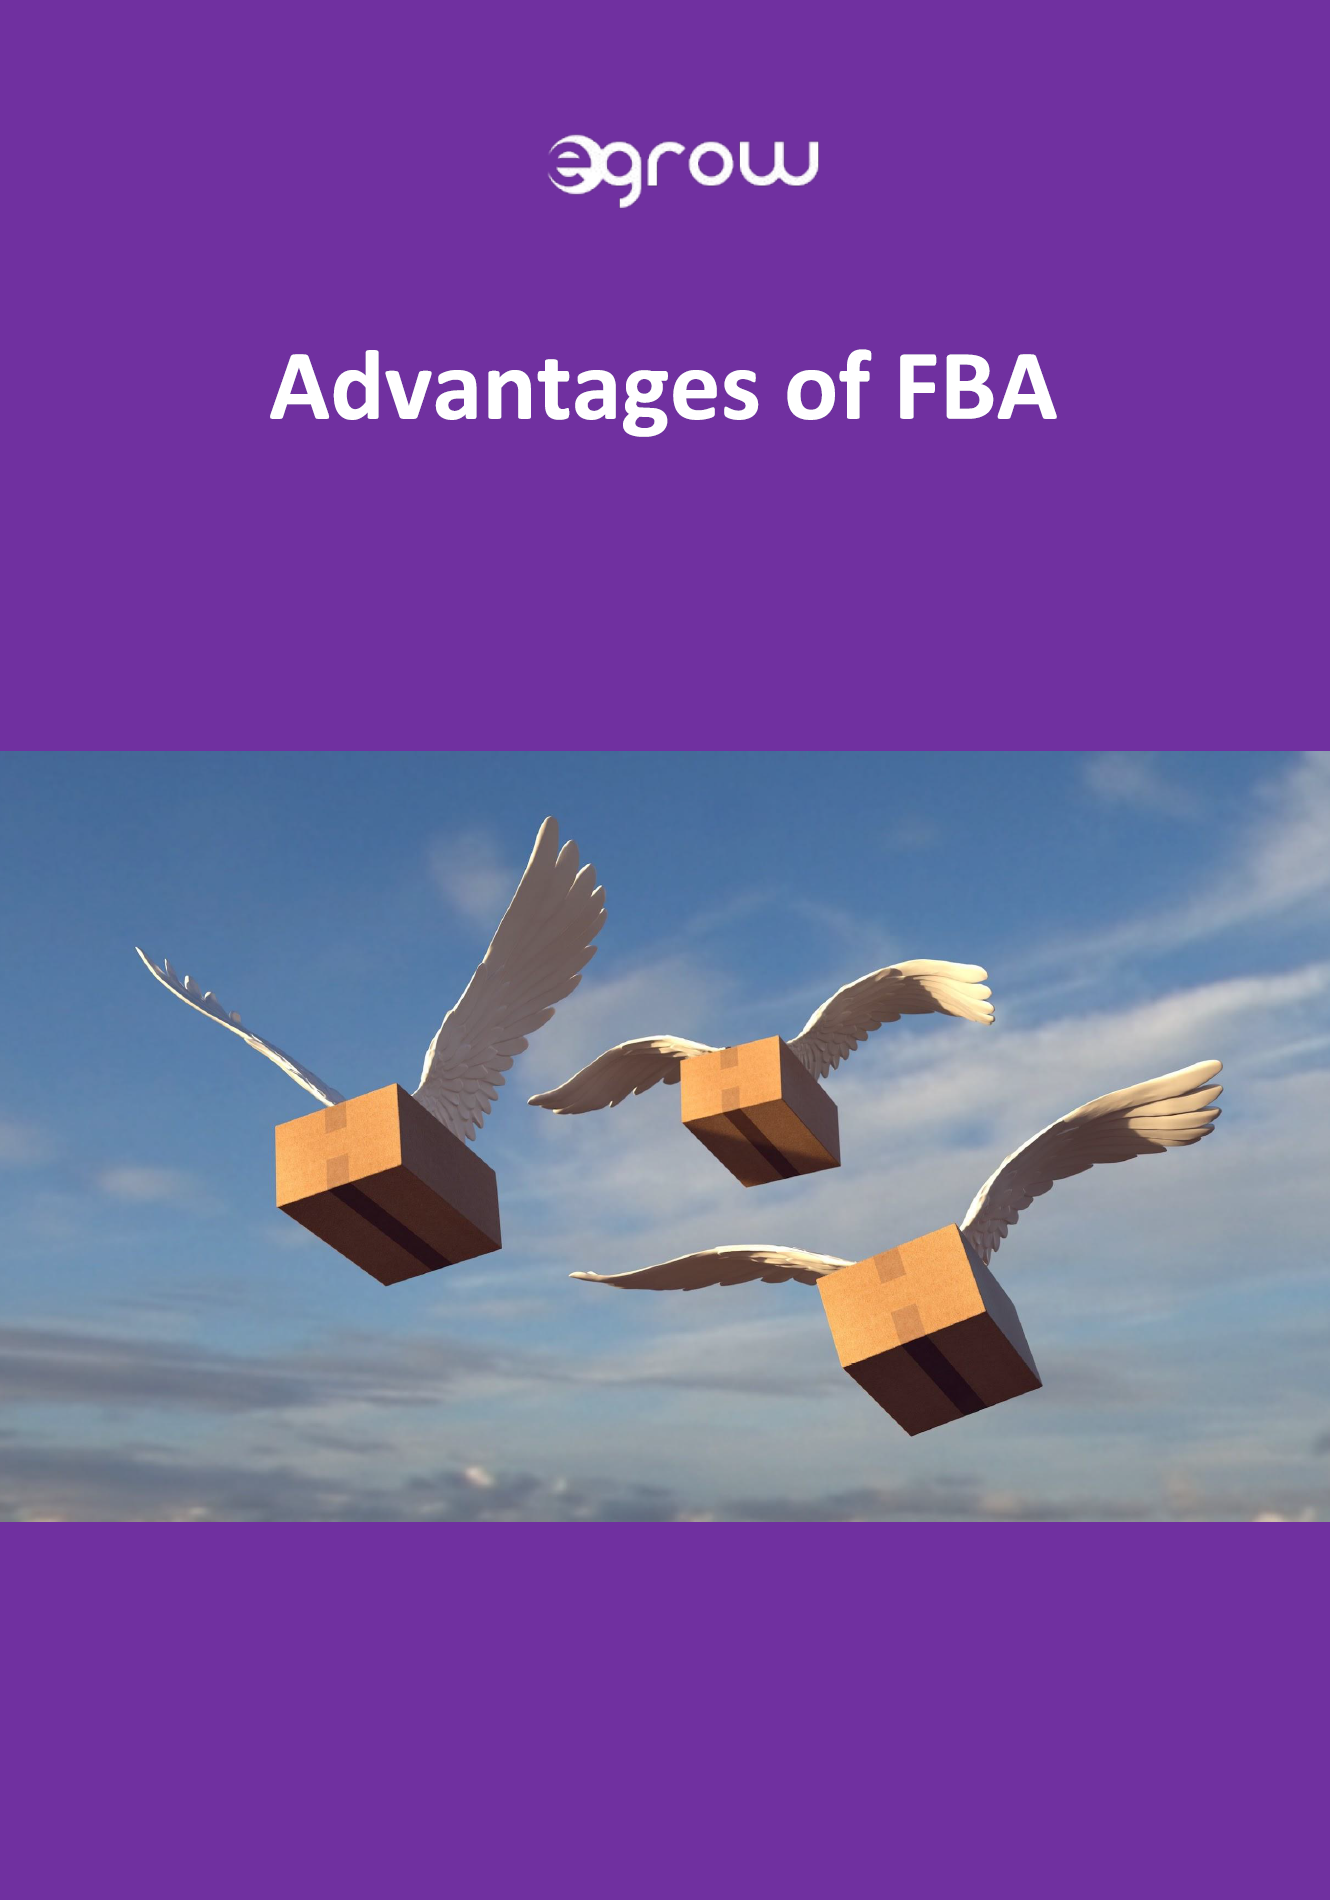 FBA Advantages